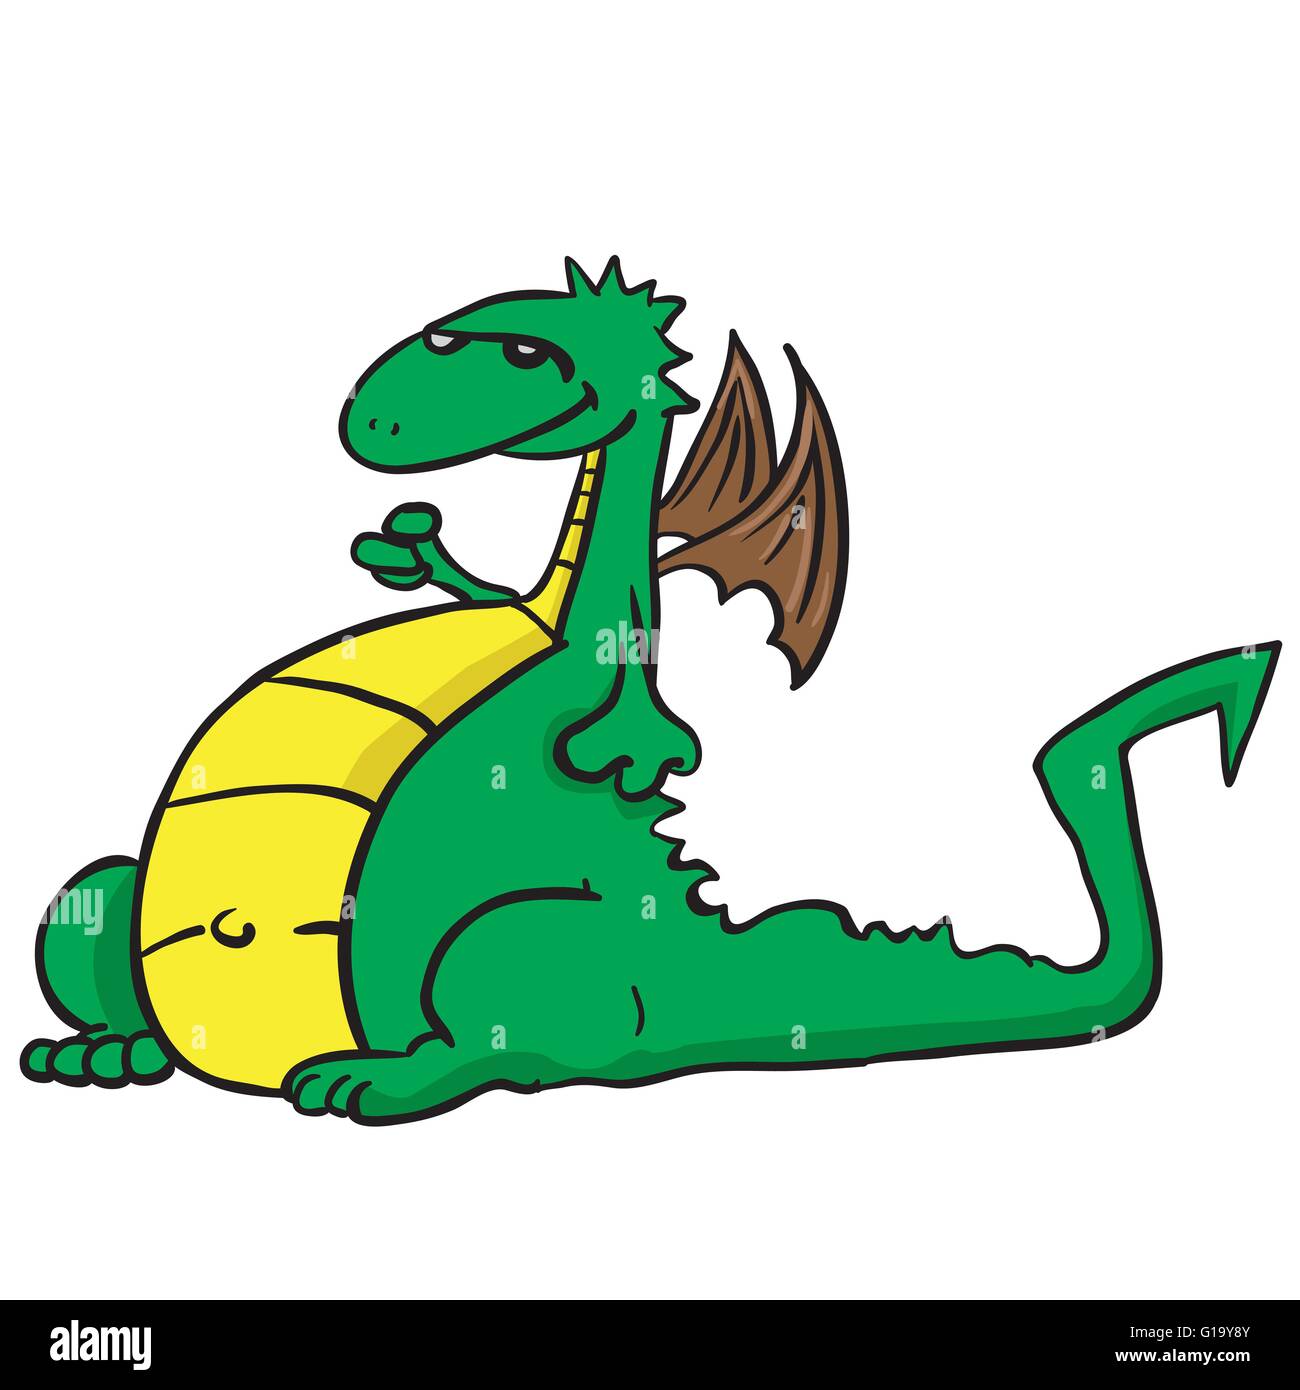 green dragon cartoon doodle Stock Vector